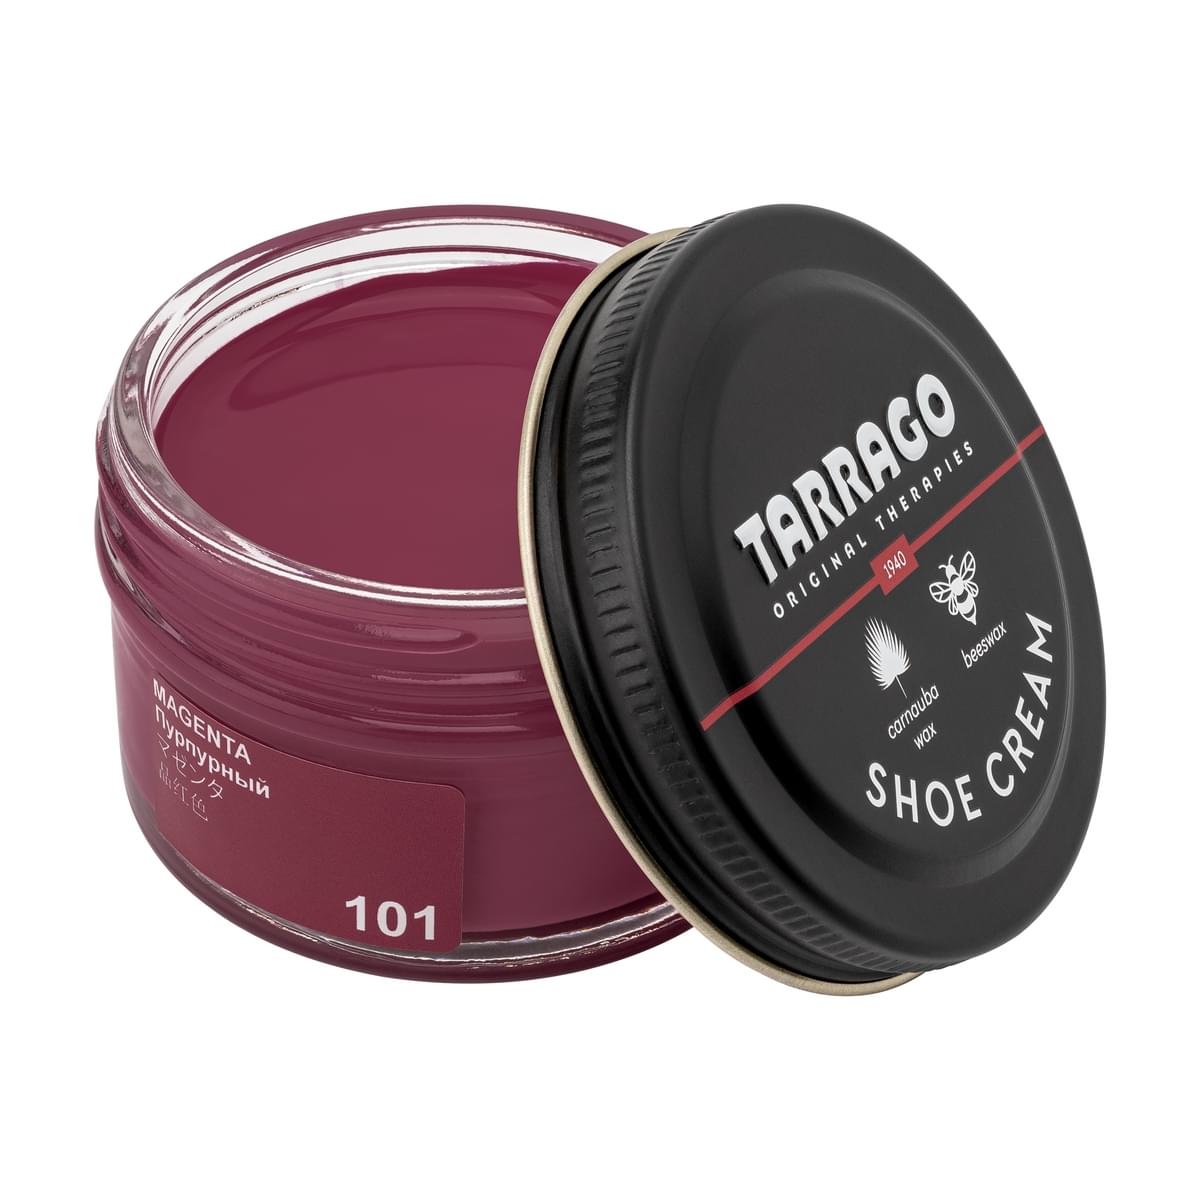 Tarrago Shoe Cream  - Magenta - 101